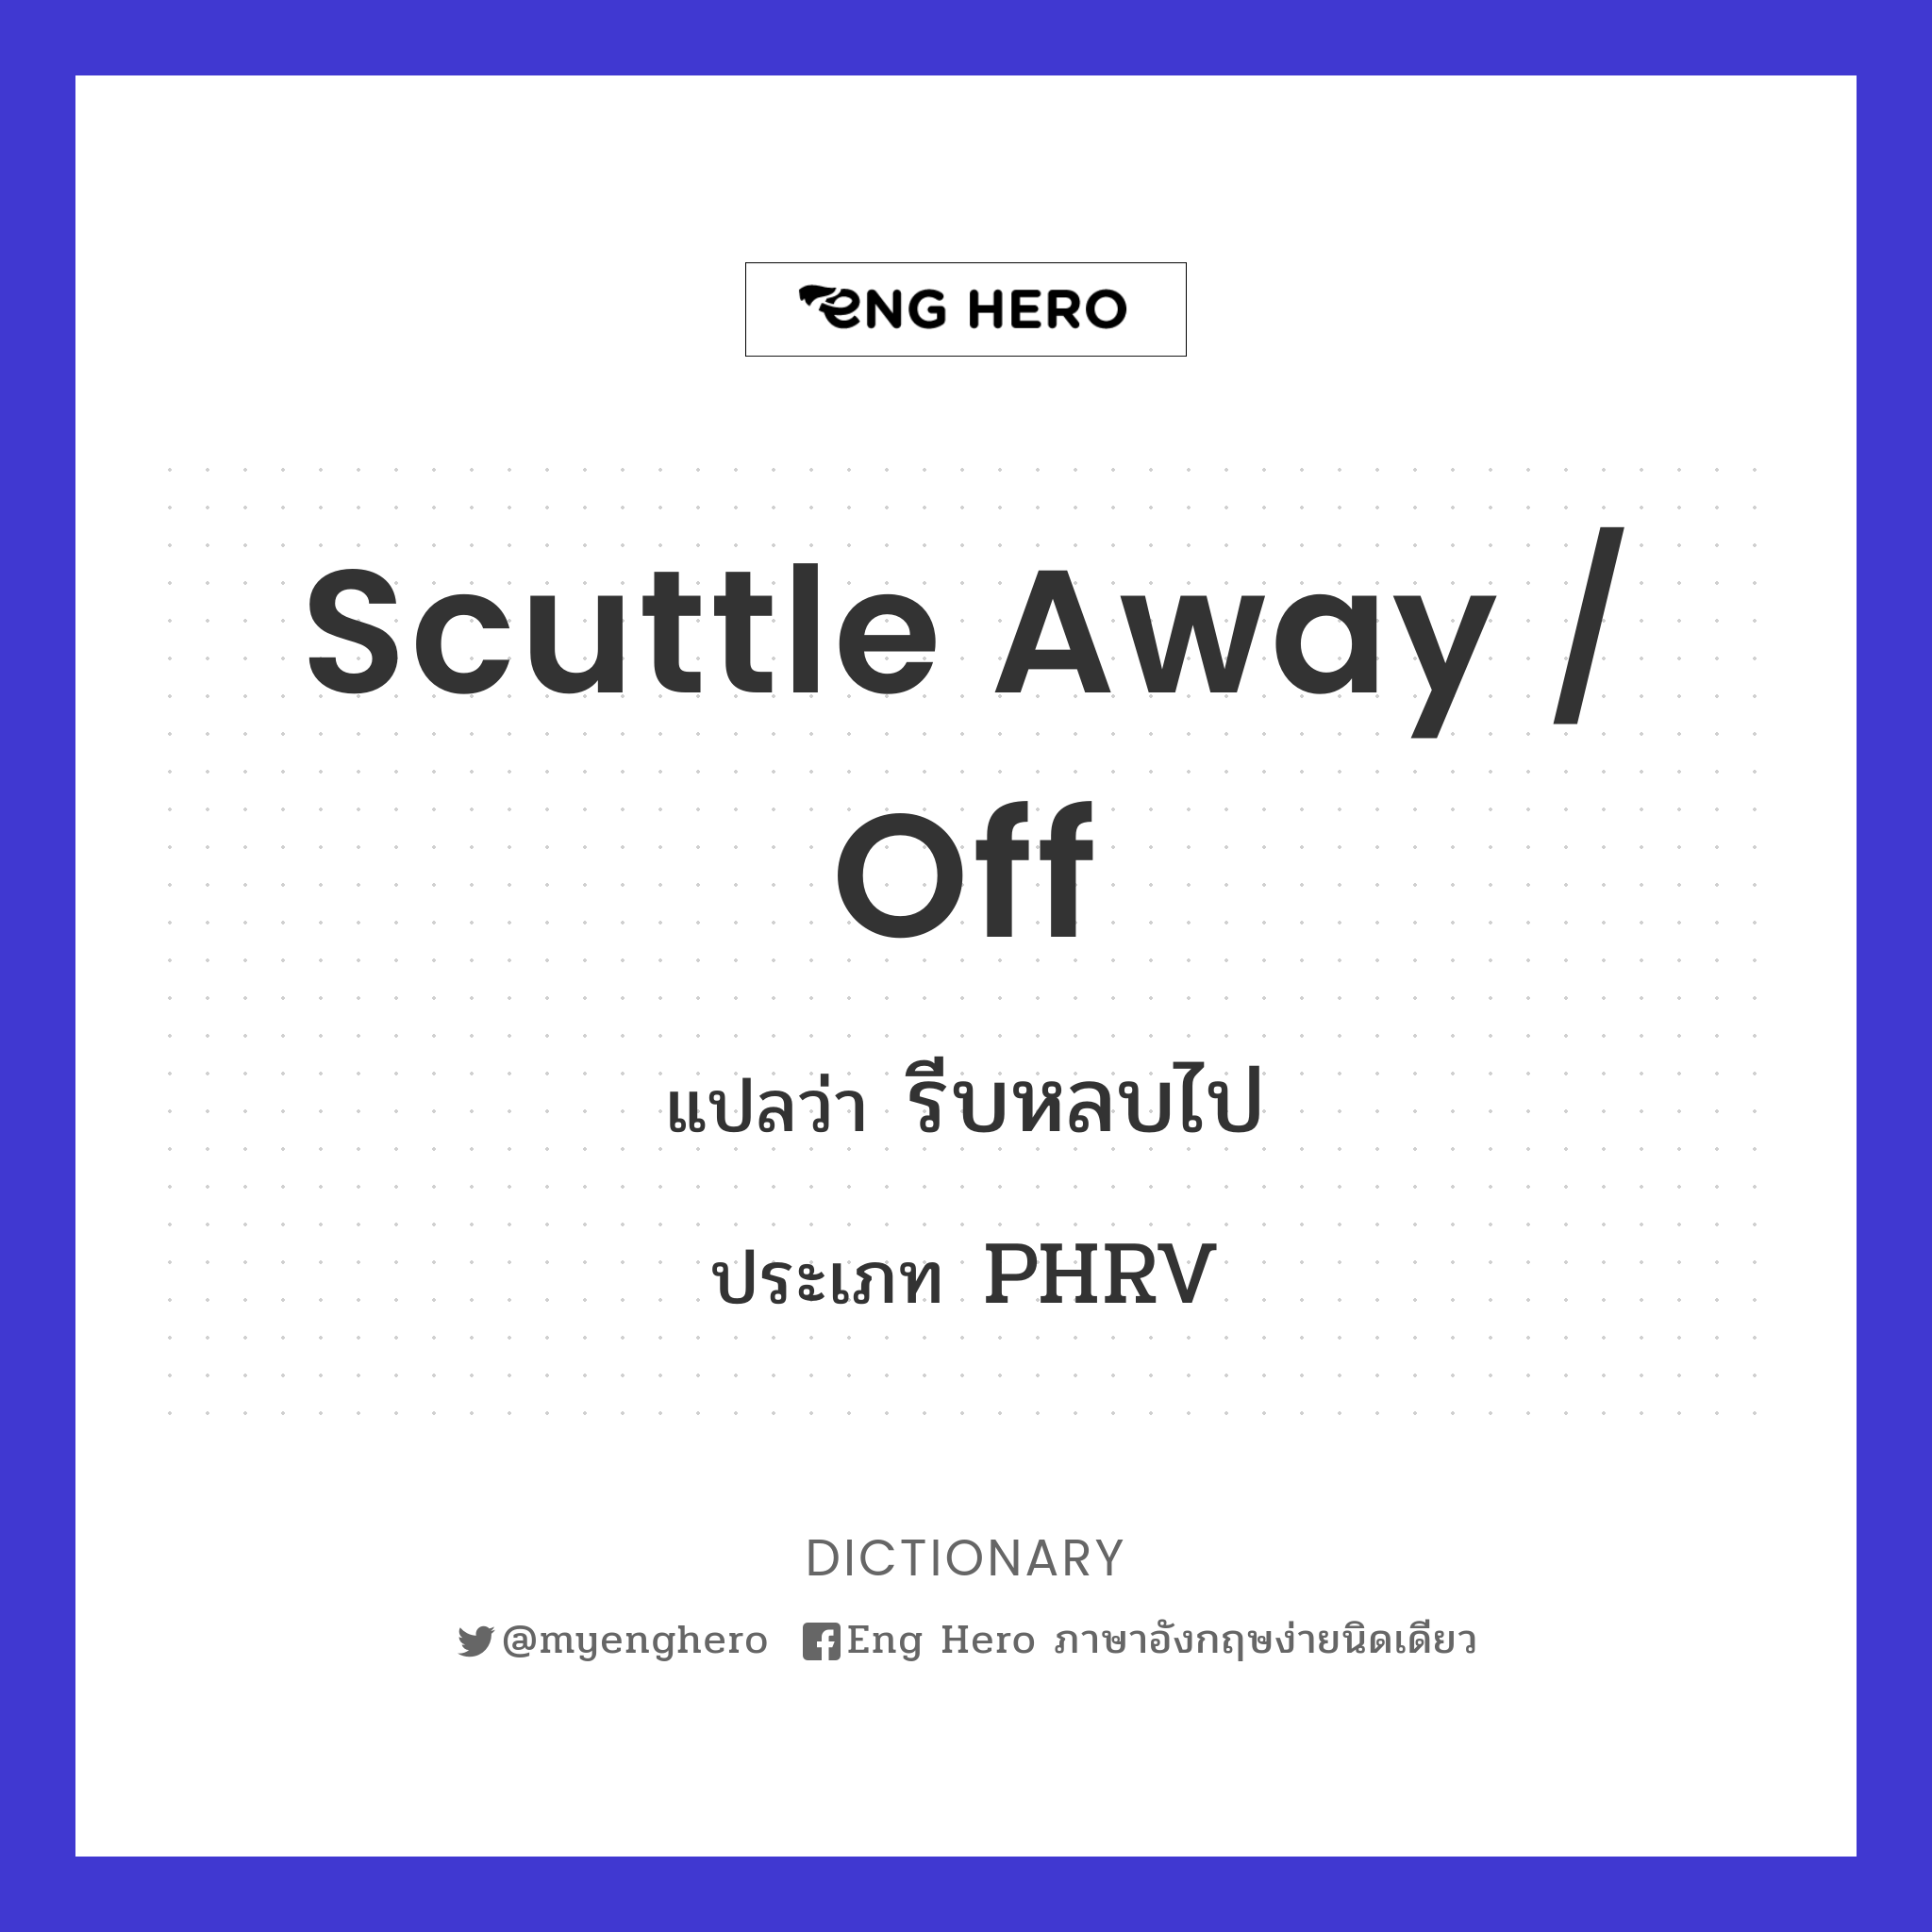 scuttle away / off